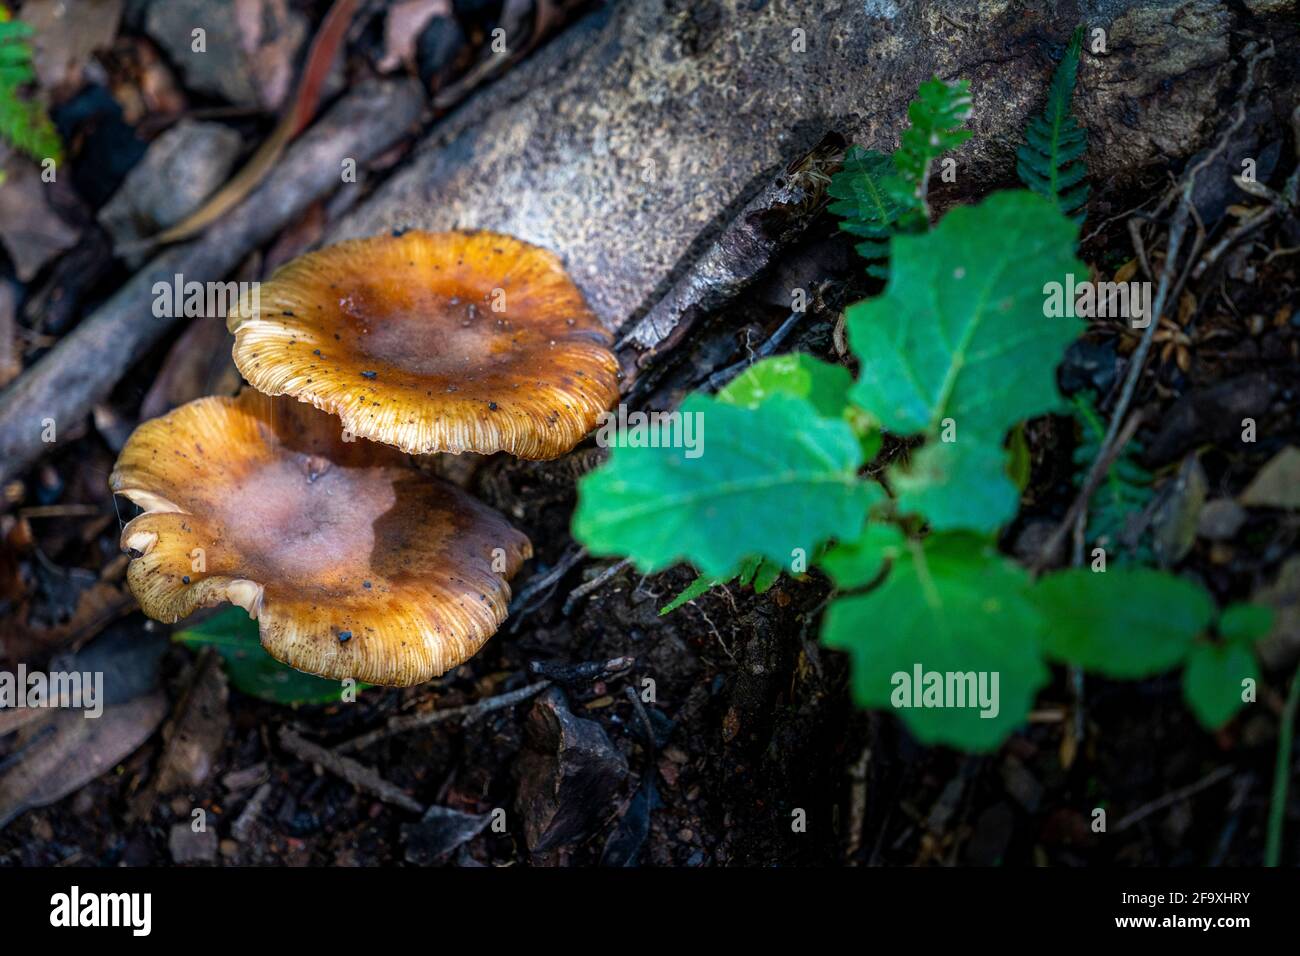 Mushrooms growing on rainforest floor, Gibraltar Range National Park, NSW, Australia Stock Photo